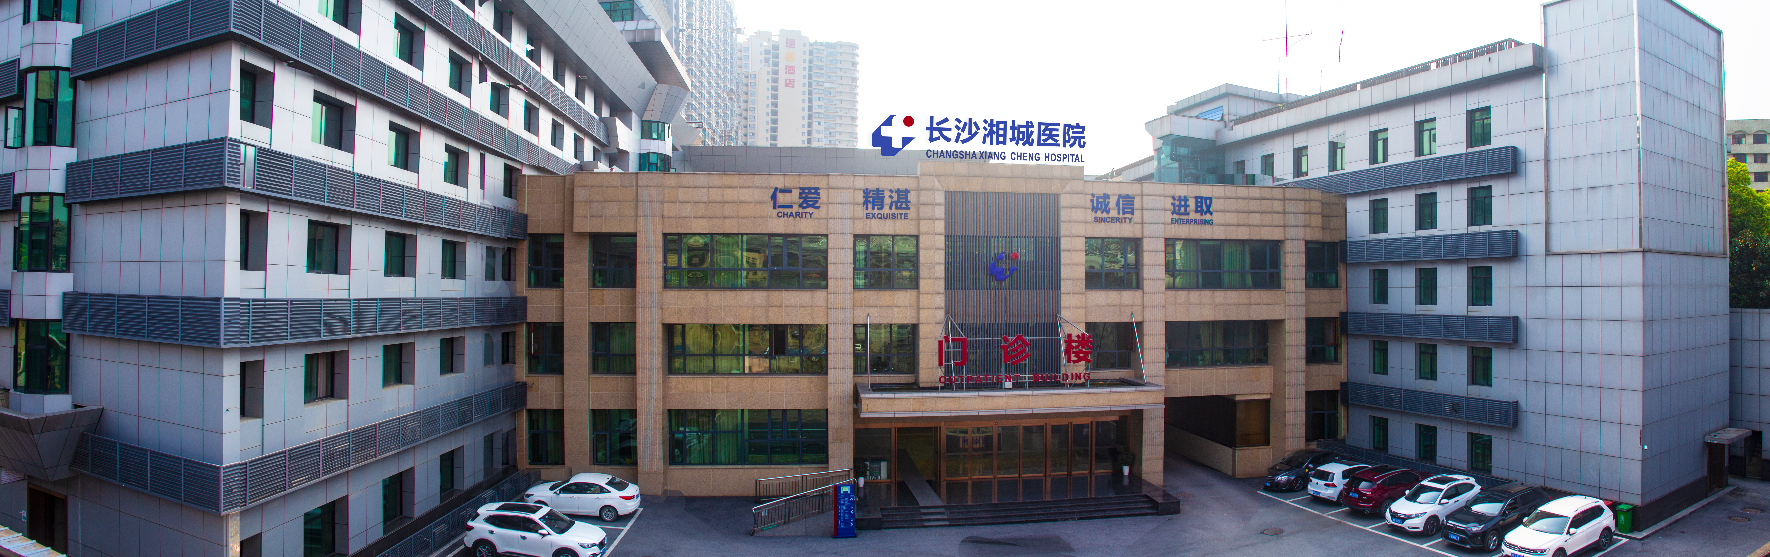 长沙湘城医院